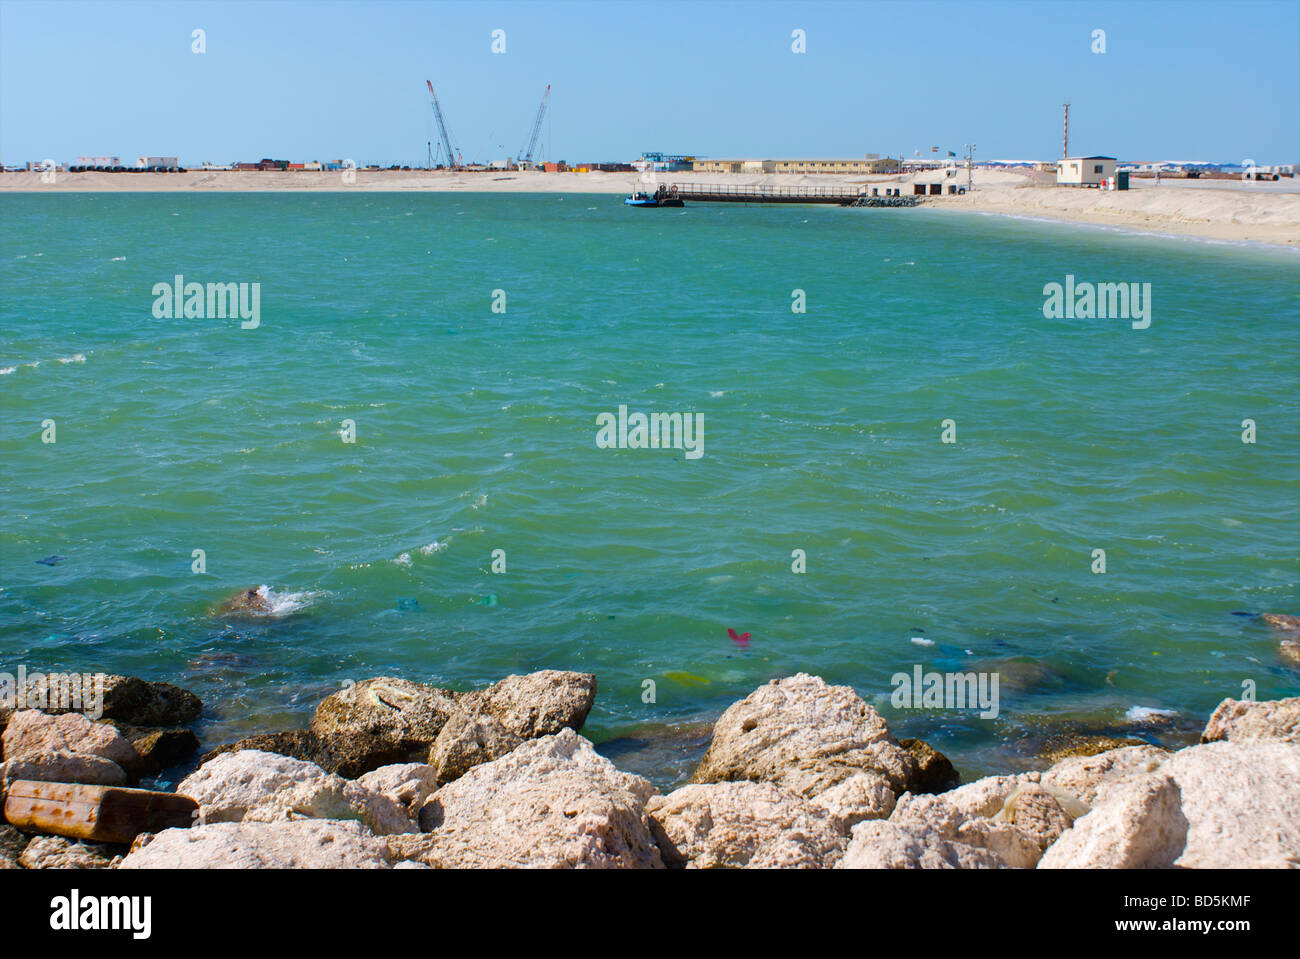 Deira Corniche e Palm Deira sito in costruzione, Dubai, Emirati arabi uniti (EAU). Vedere la descrizione per maggiori informazioni. Foto Stock